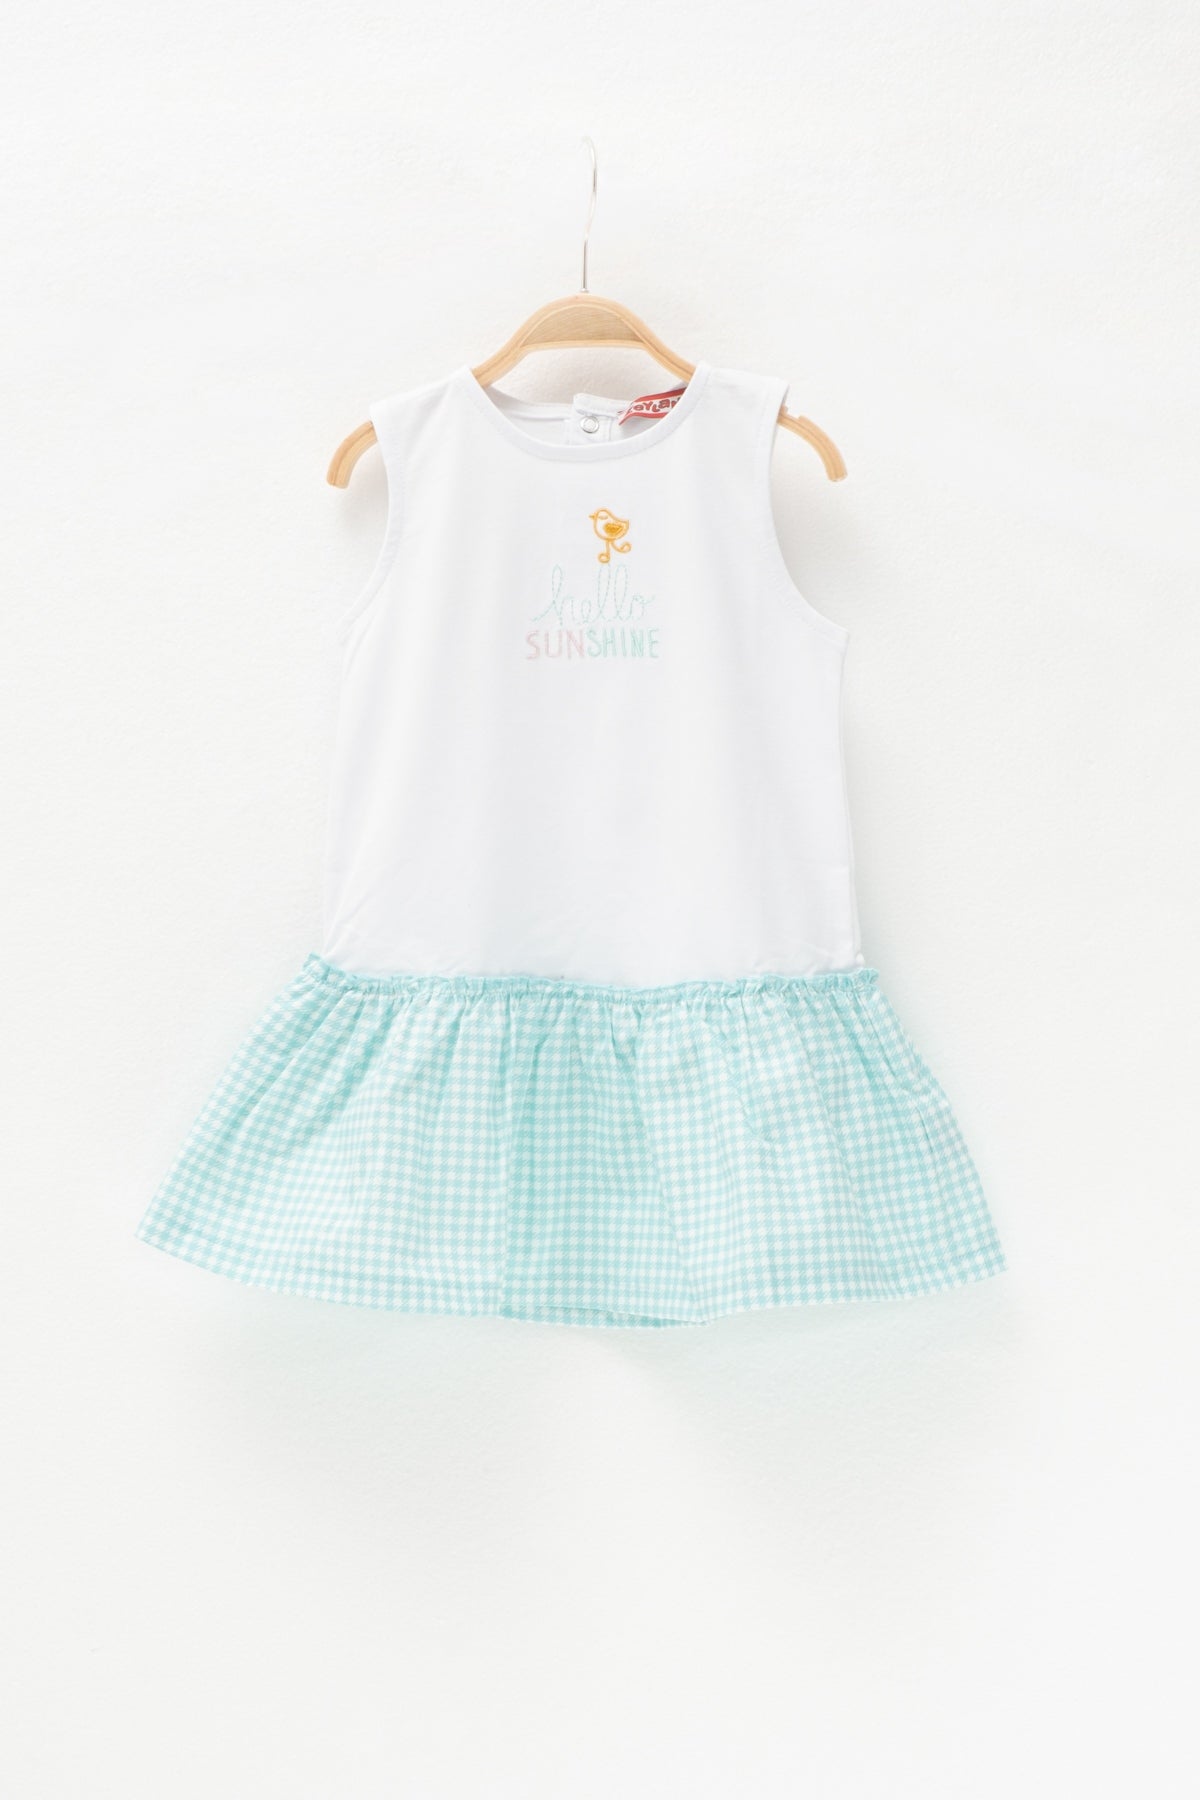 Kız Bebek Hello Sunshine Yeşil Potikare Beyaz Elbise (2-7yaş)-0